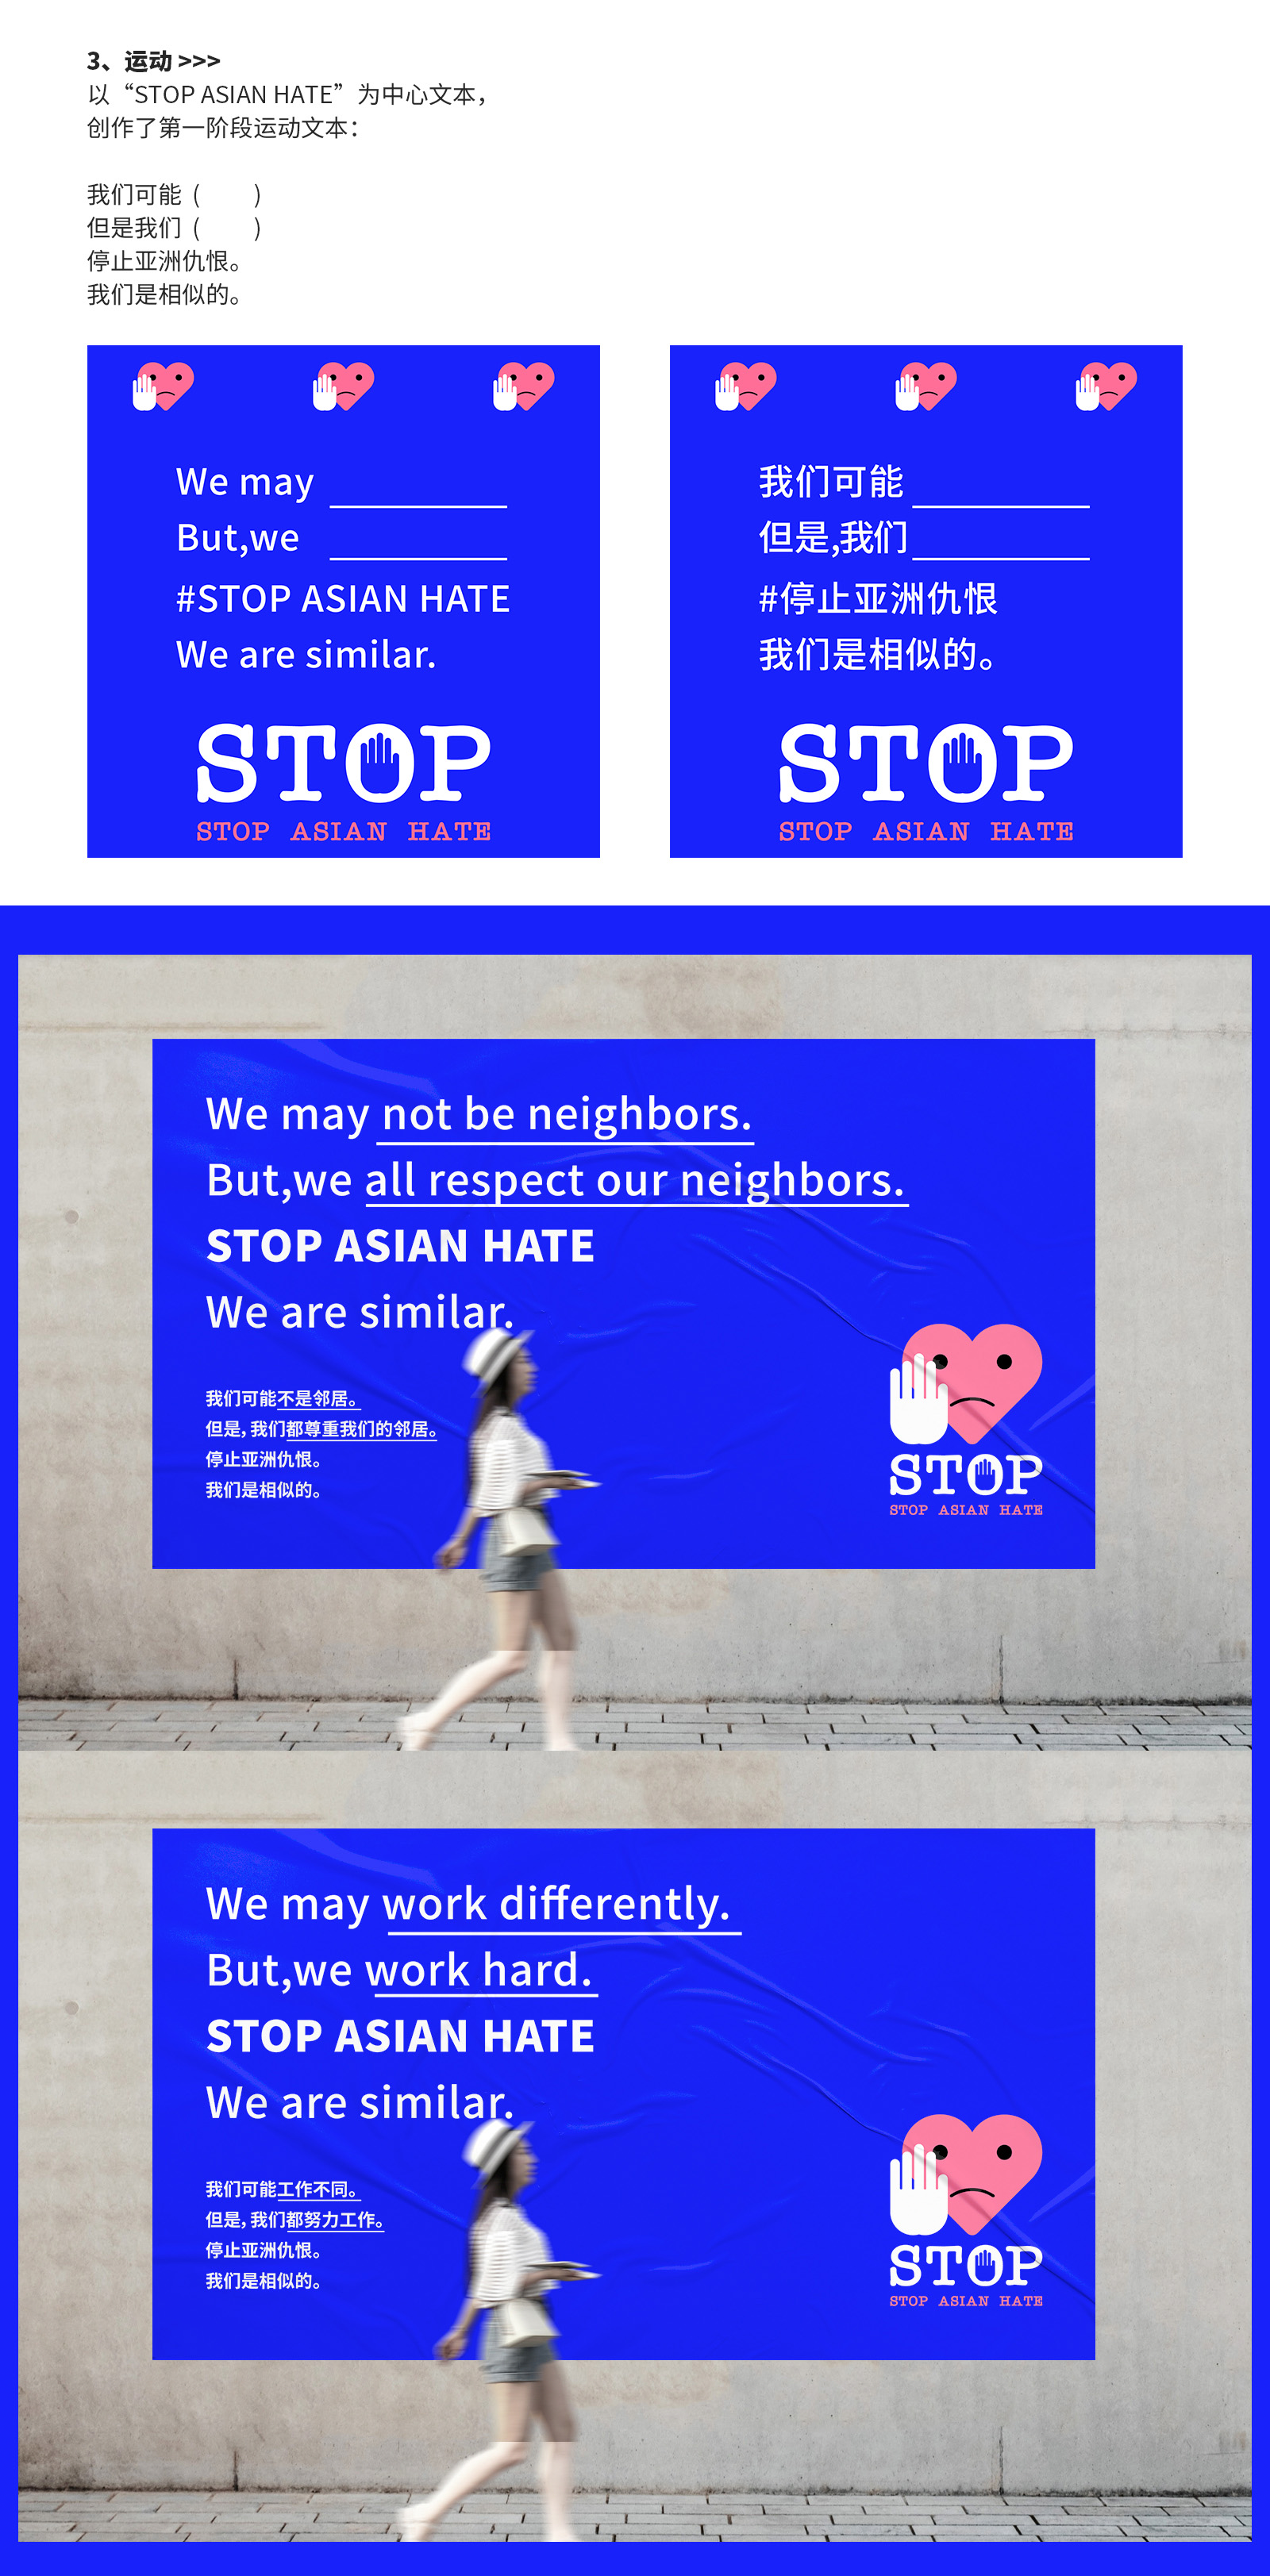 公益品牌运动 / STOP ASIAN HATE停止亚洲仇恨